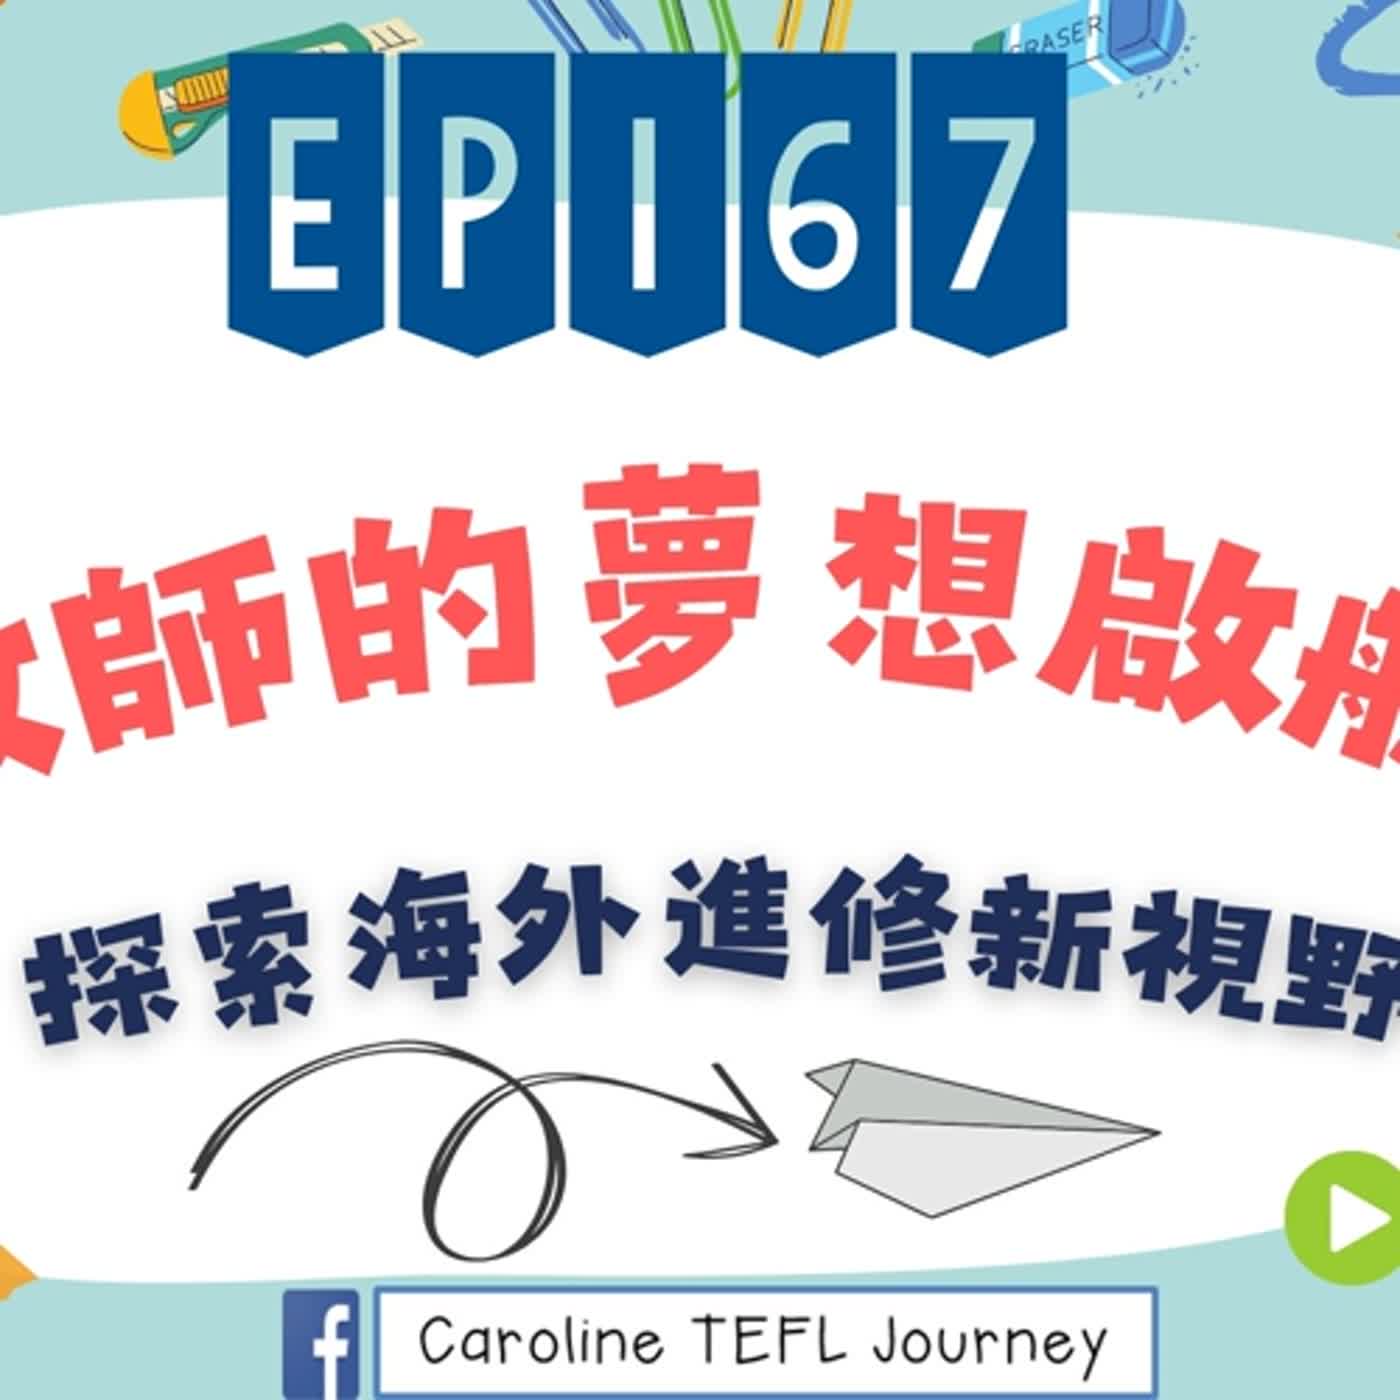 【英桃小玩子】EP167 教師的夢想啟航—探索海外進修新視野